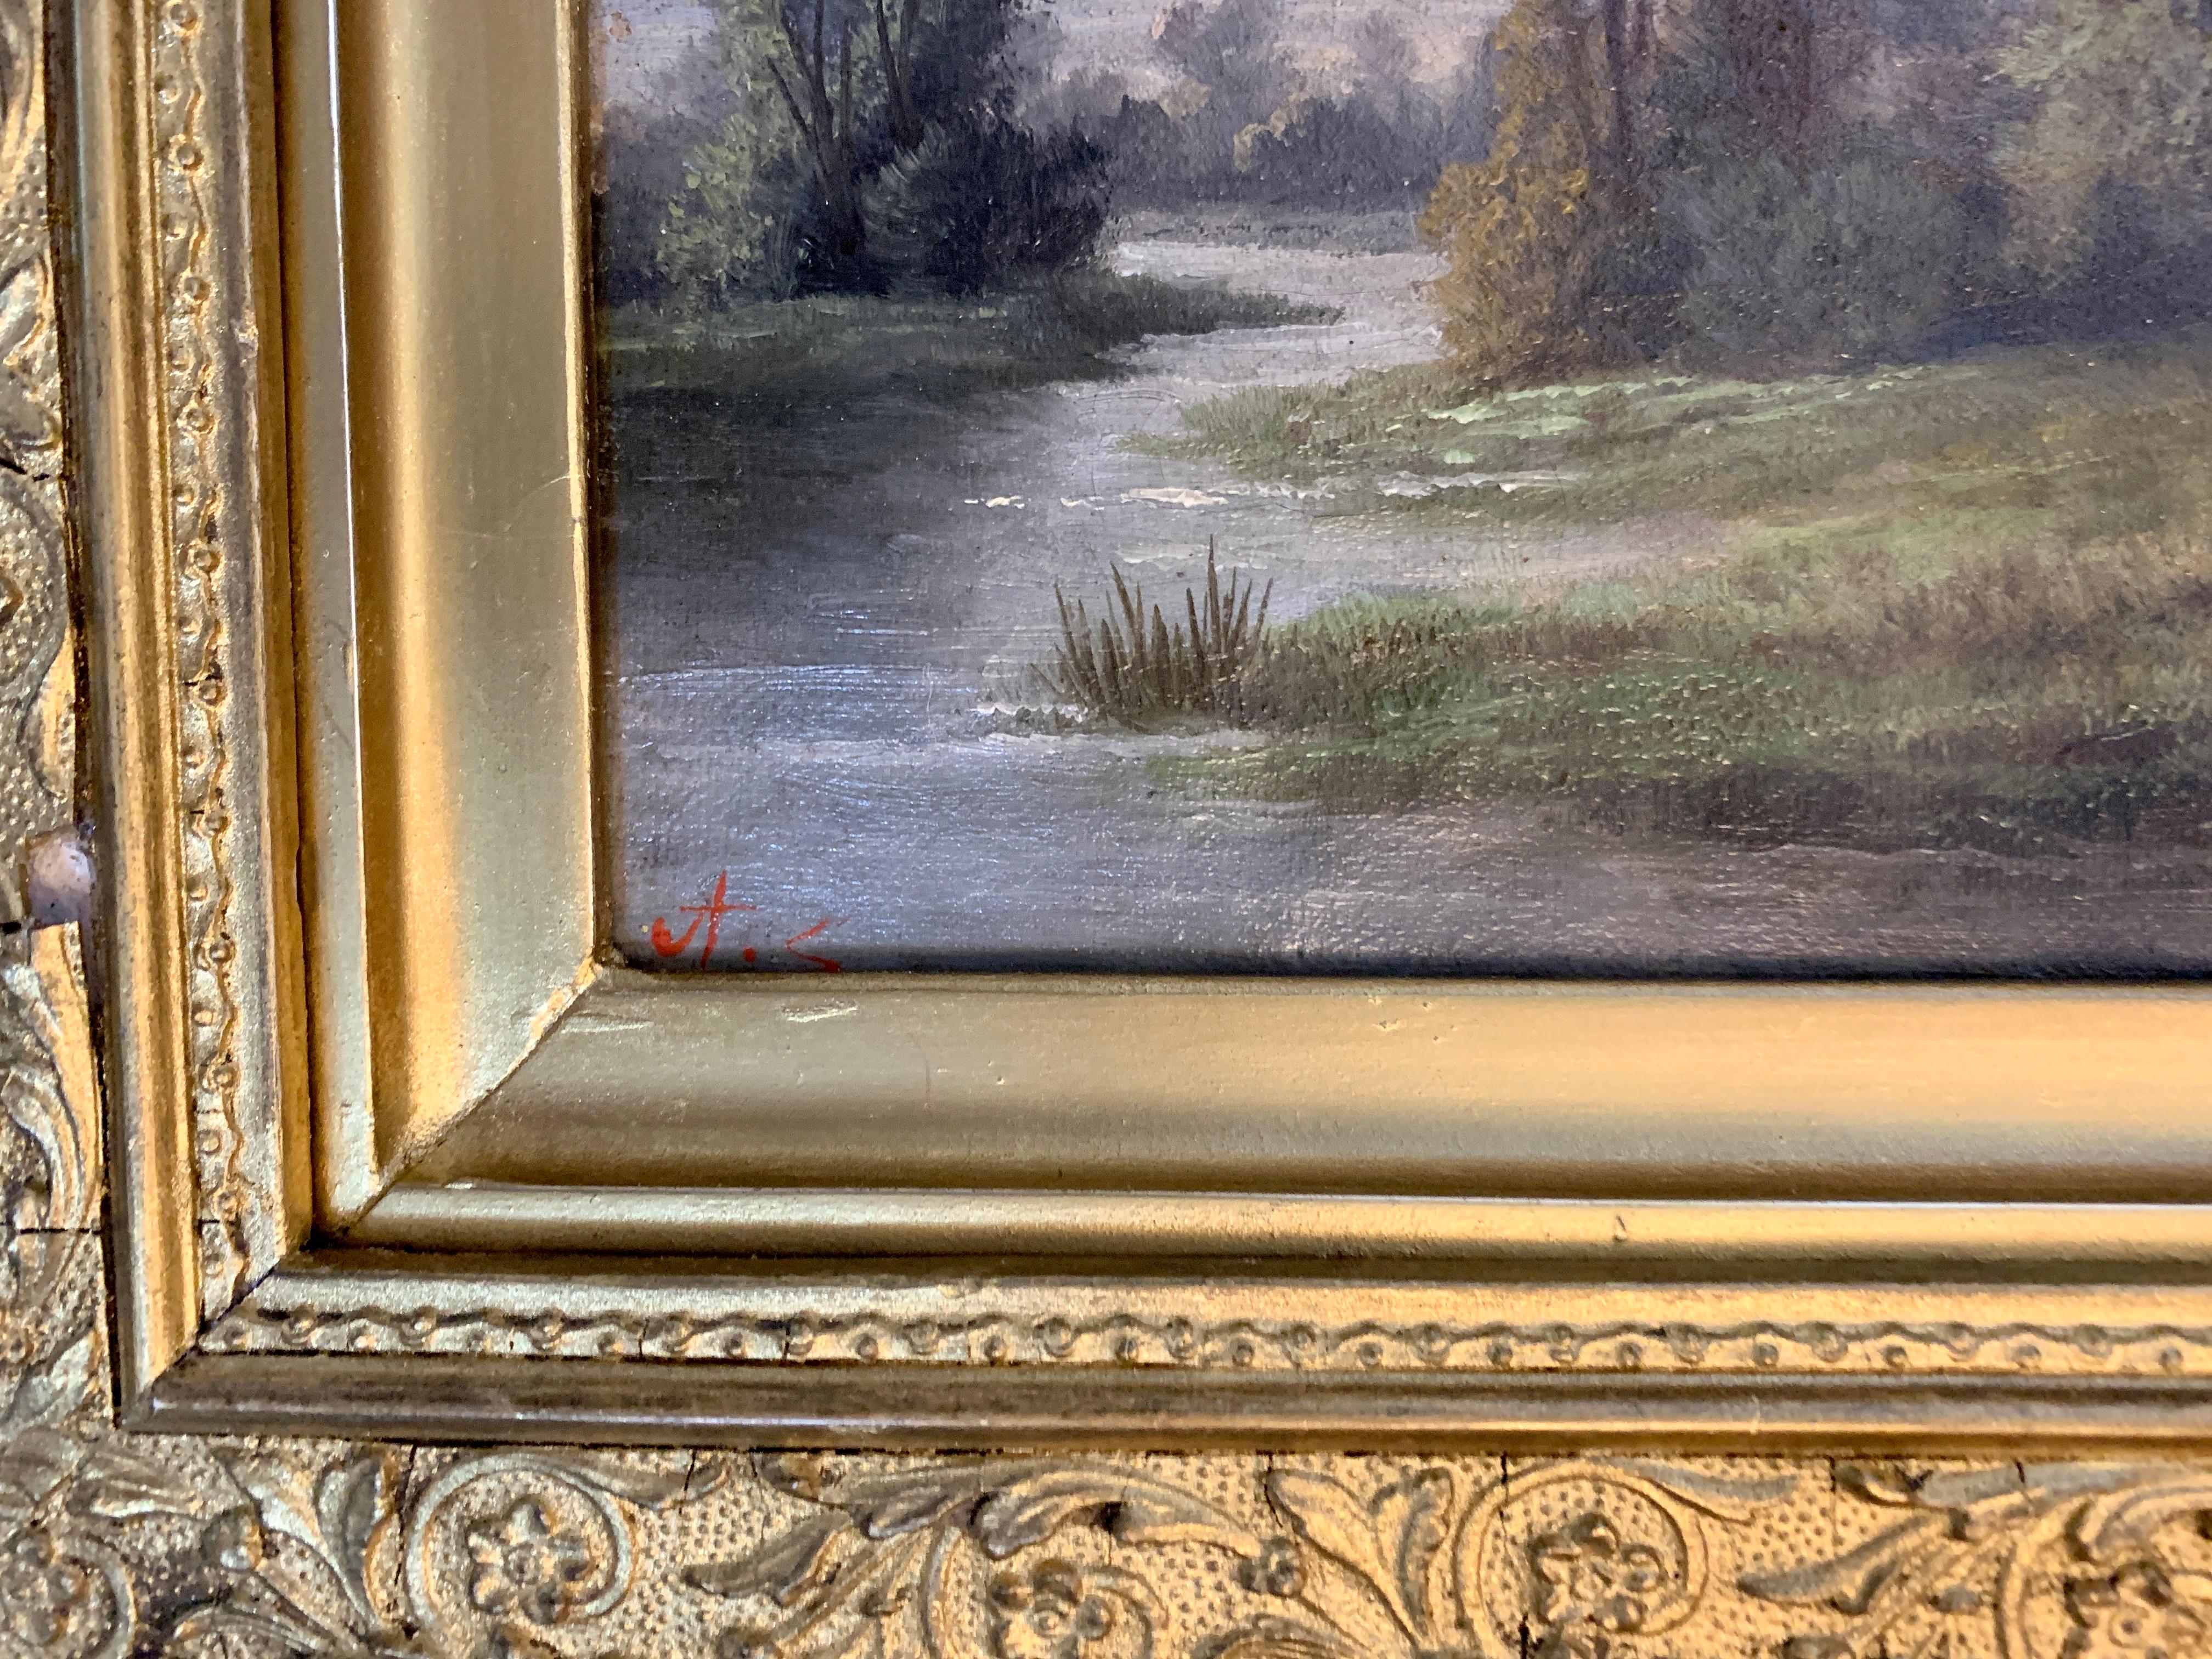 Ada Stone, englische viktorianische Landschaft mit Eichen und Ja-Bäumen an einem Weg.
Ada Stone hatte eine Londoner Adresse, war aber eine Malerin aus den East Midlands, die sich in ihren Werken auf ruhige englische Flusslandschaften konzentrierte.